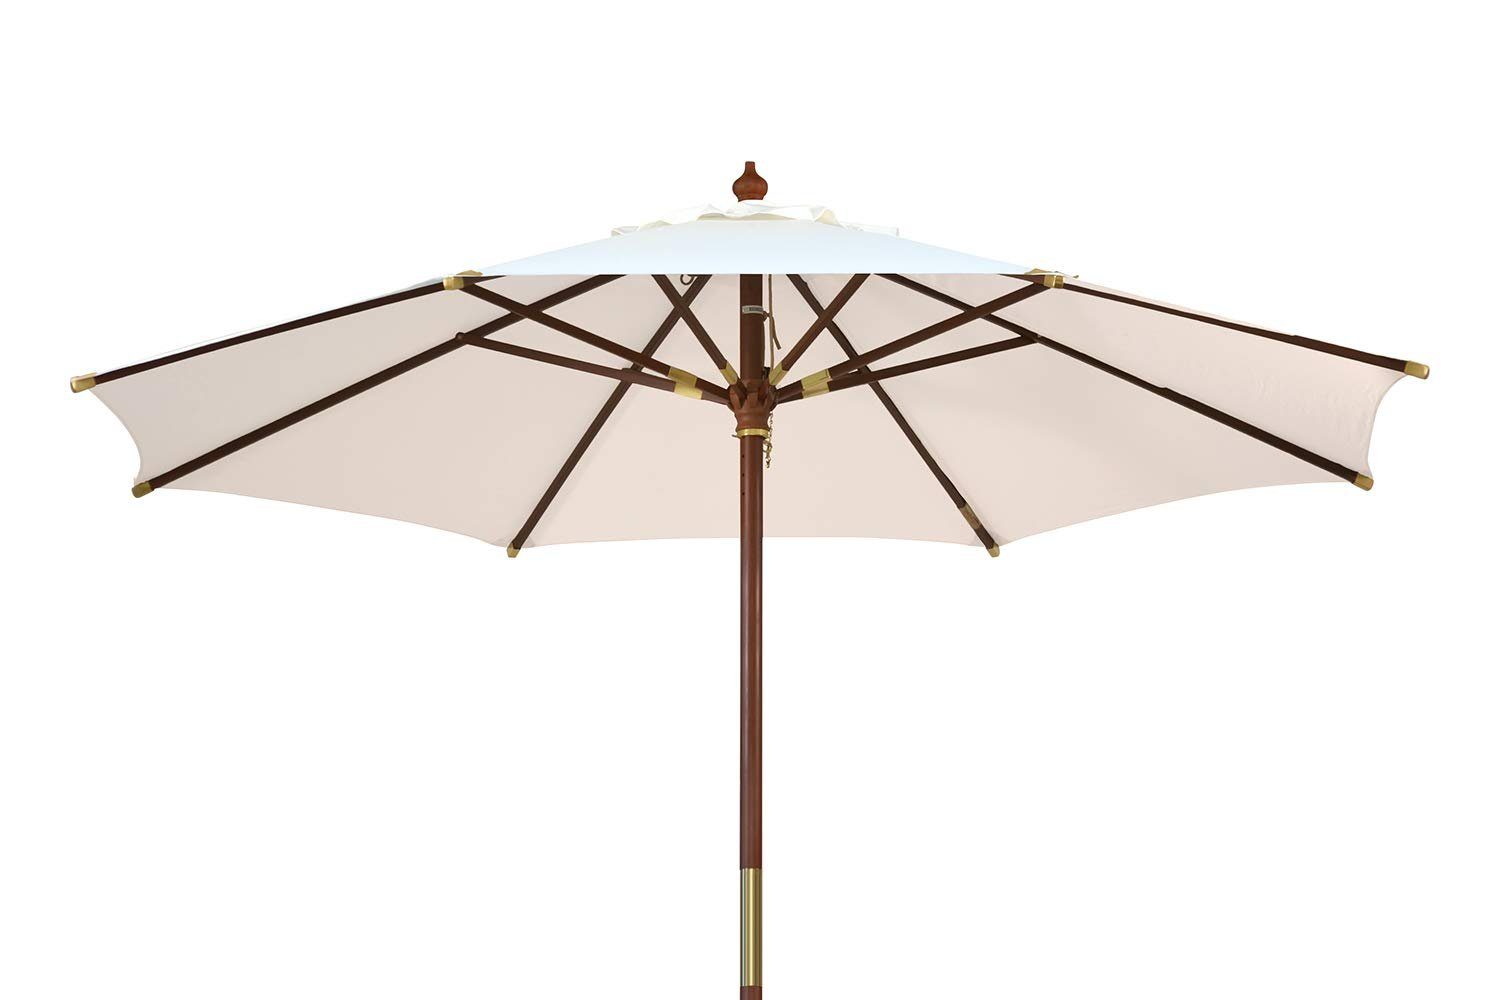 Kai Wiechmann Sonnenschirm Runder Balkonschirm 350 cm als hochwertiger Schattenspender, Gartenschirm aus Holz mit Windauslass & UPF 50+